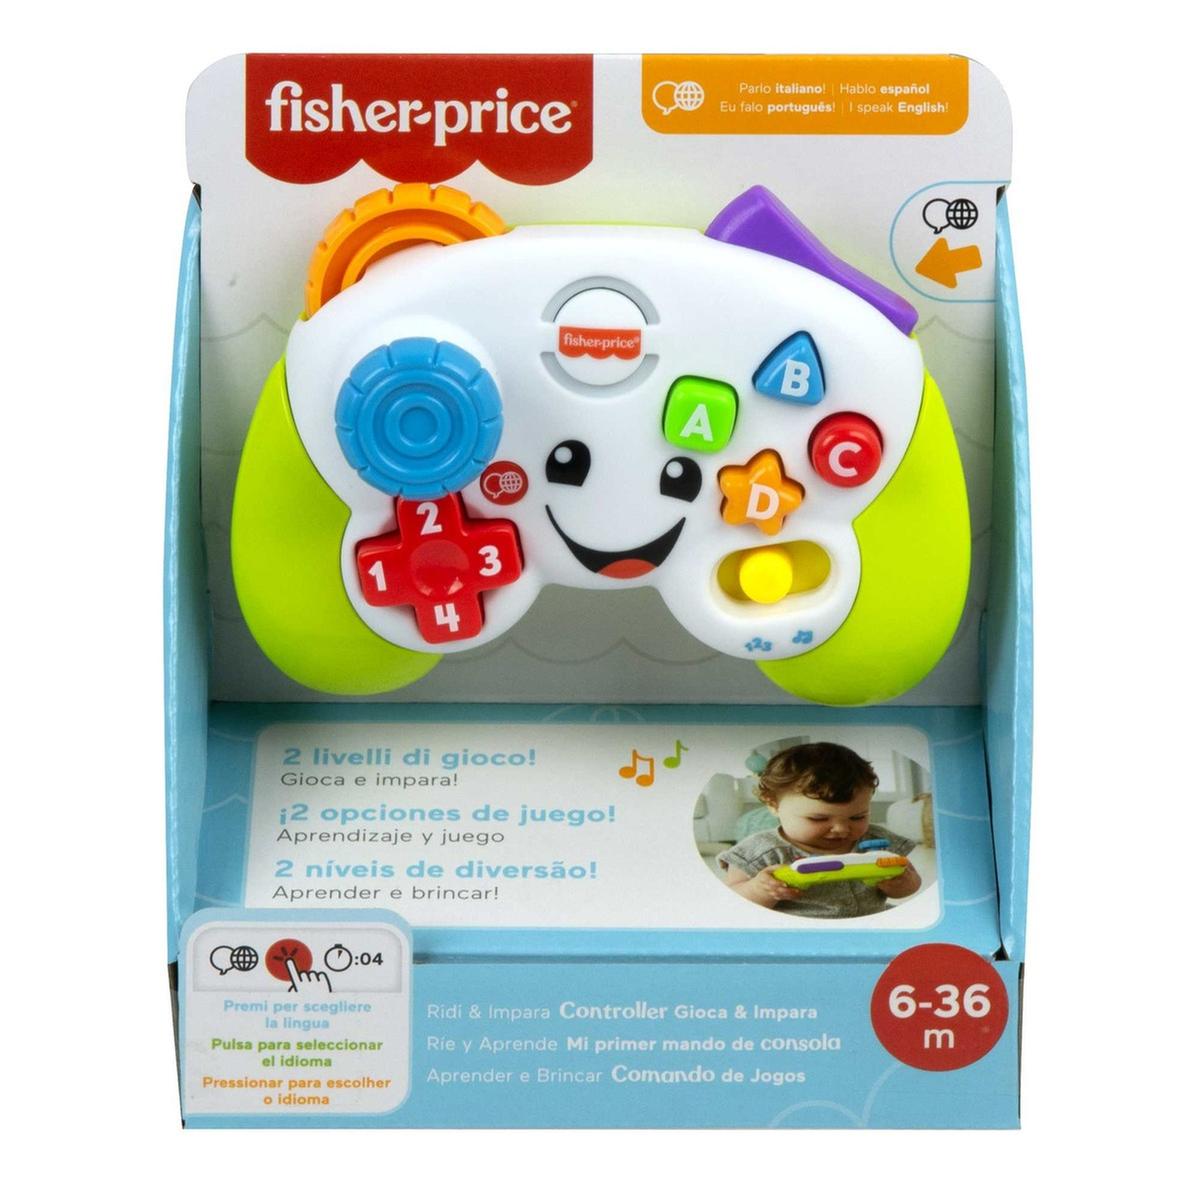 Fisher Price - Mi primer mando de consola para aprendizaje divertido ㅤ, Fisher Price Core